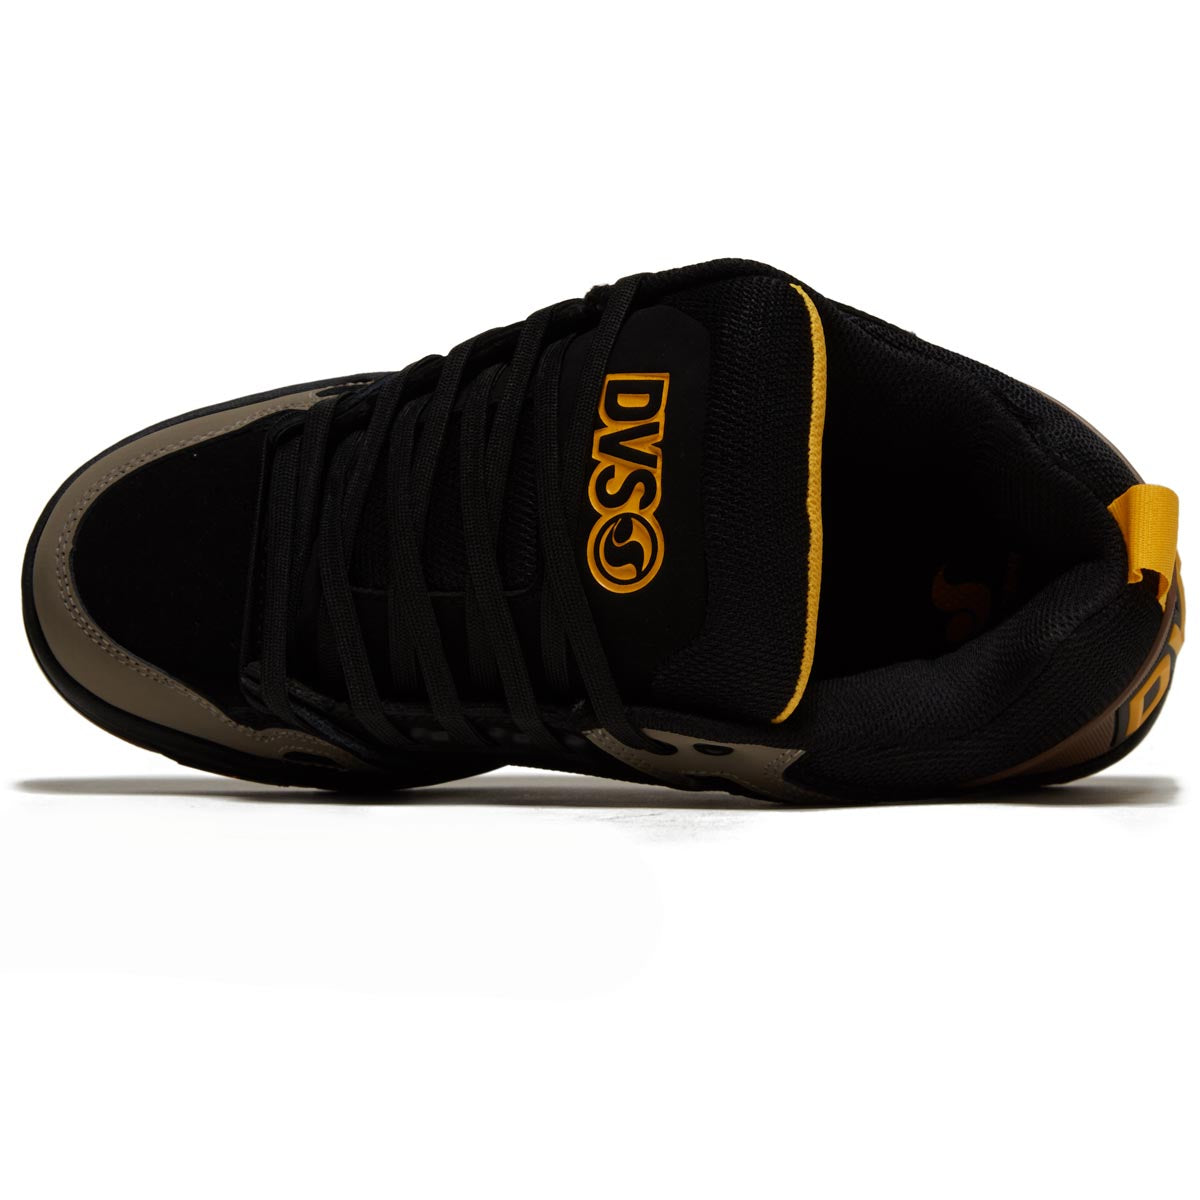 DVS Comanche Shoes - Brindle/Black/Yellow Nubuck image 3